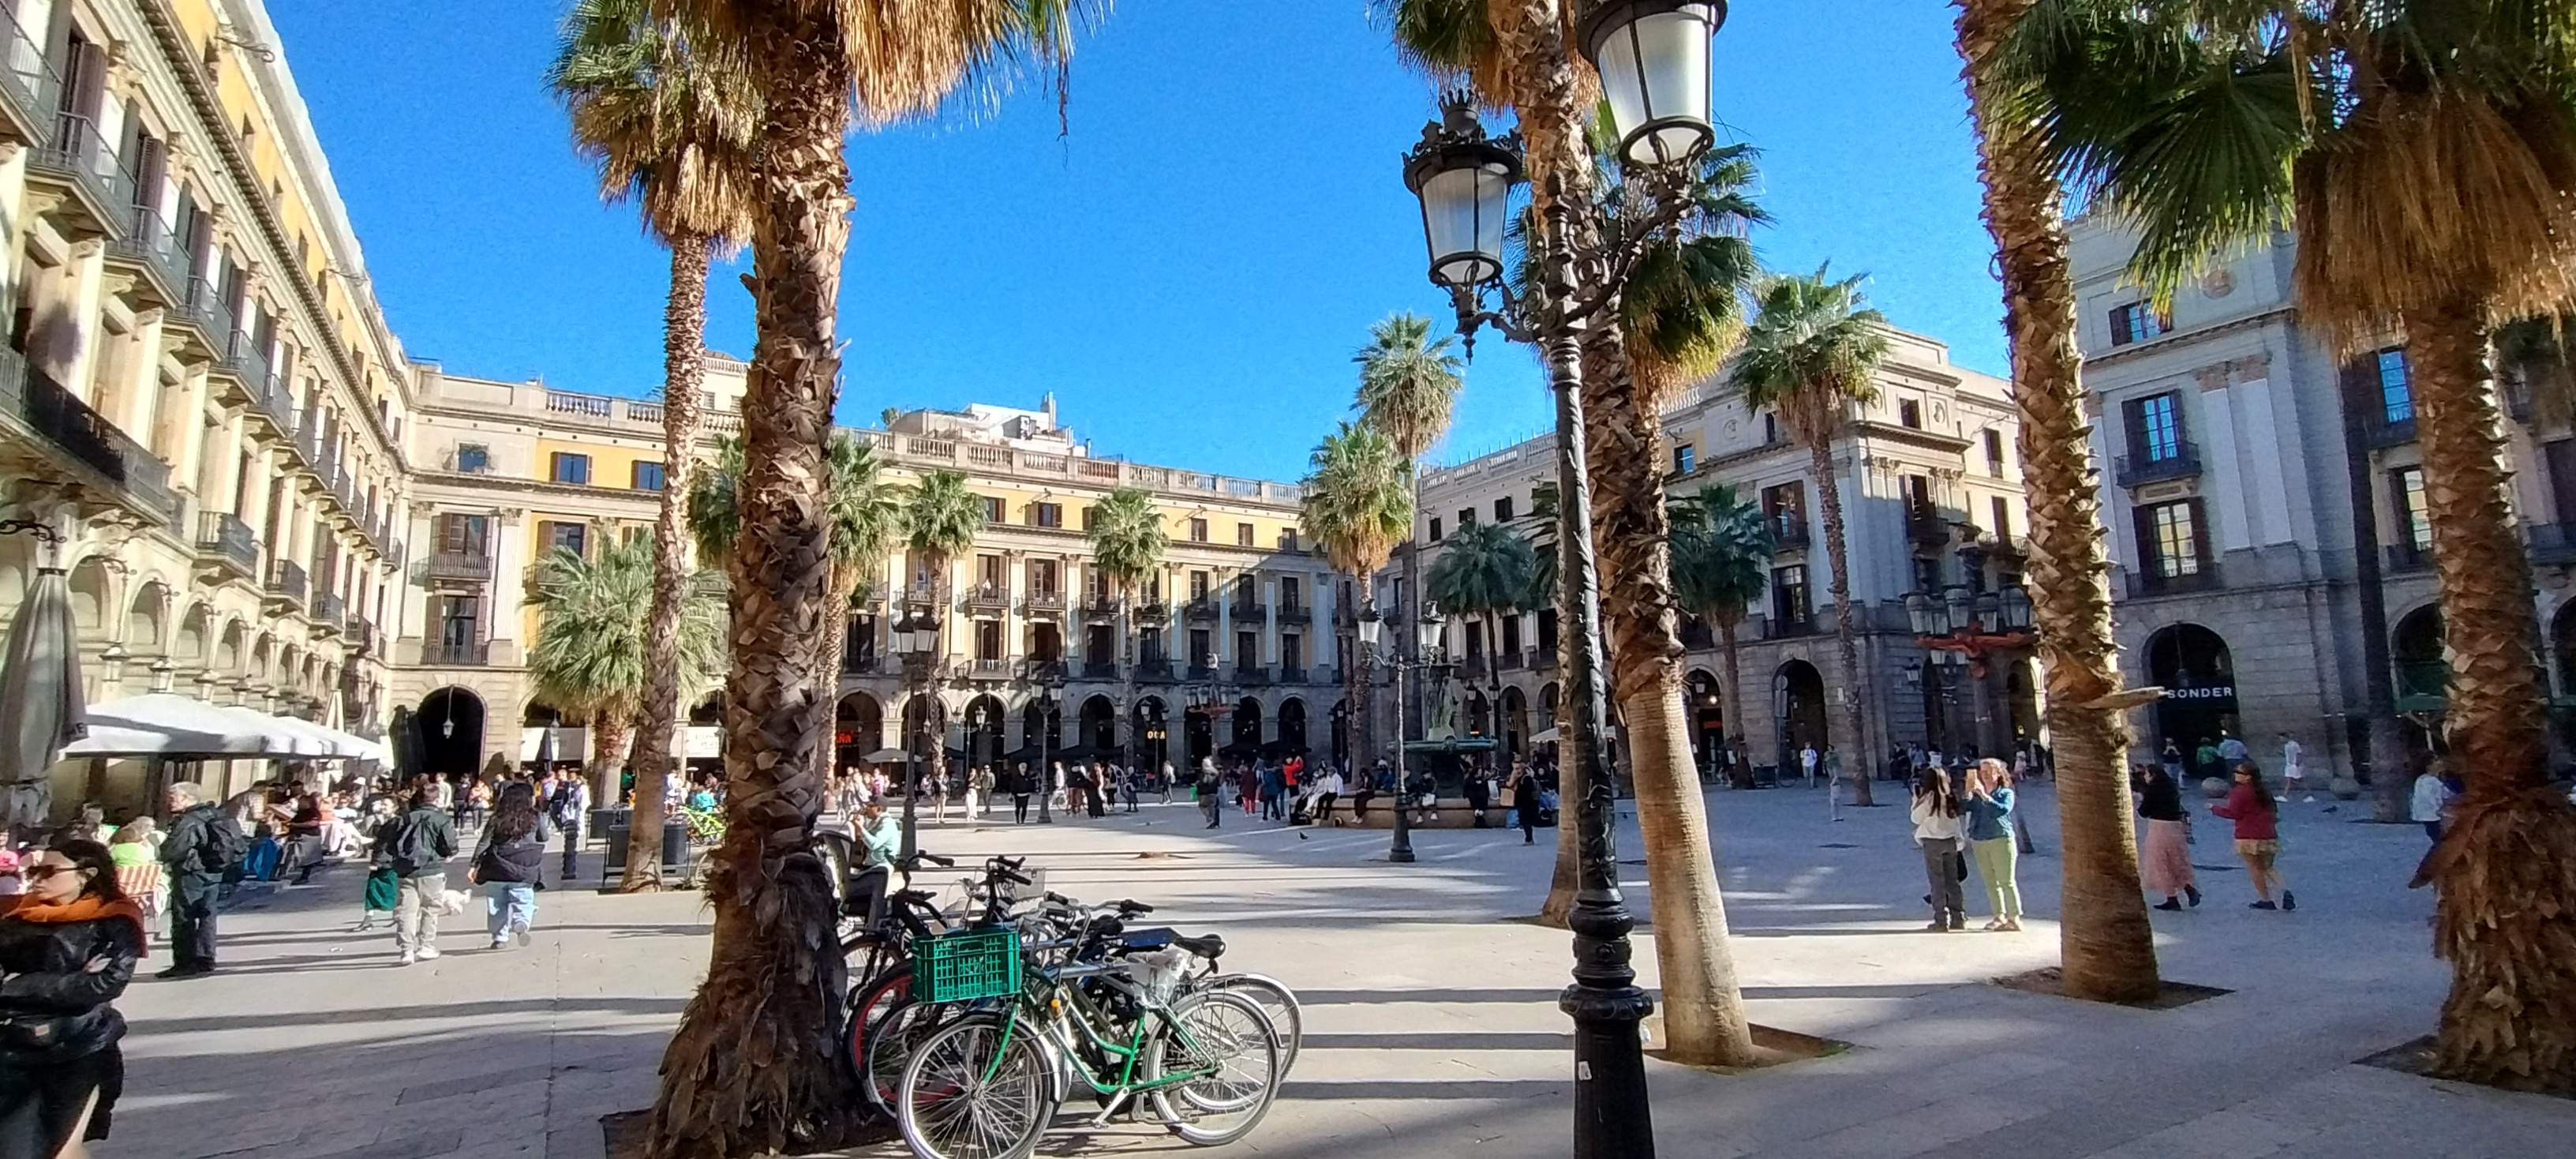 De convento a epicentro turístico y con obra de Gaudí: 175 años de historia de la plaza Reial